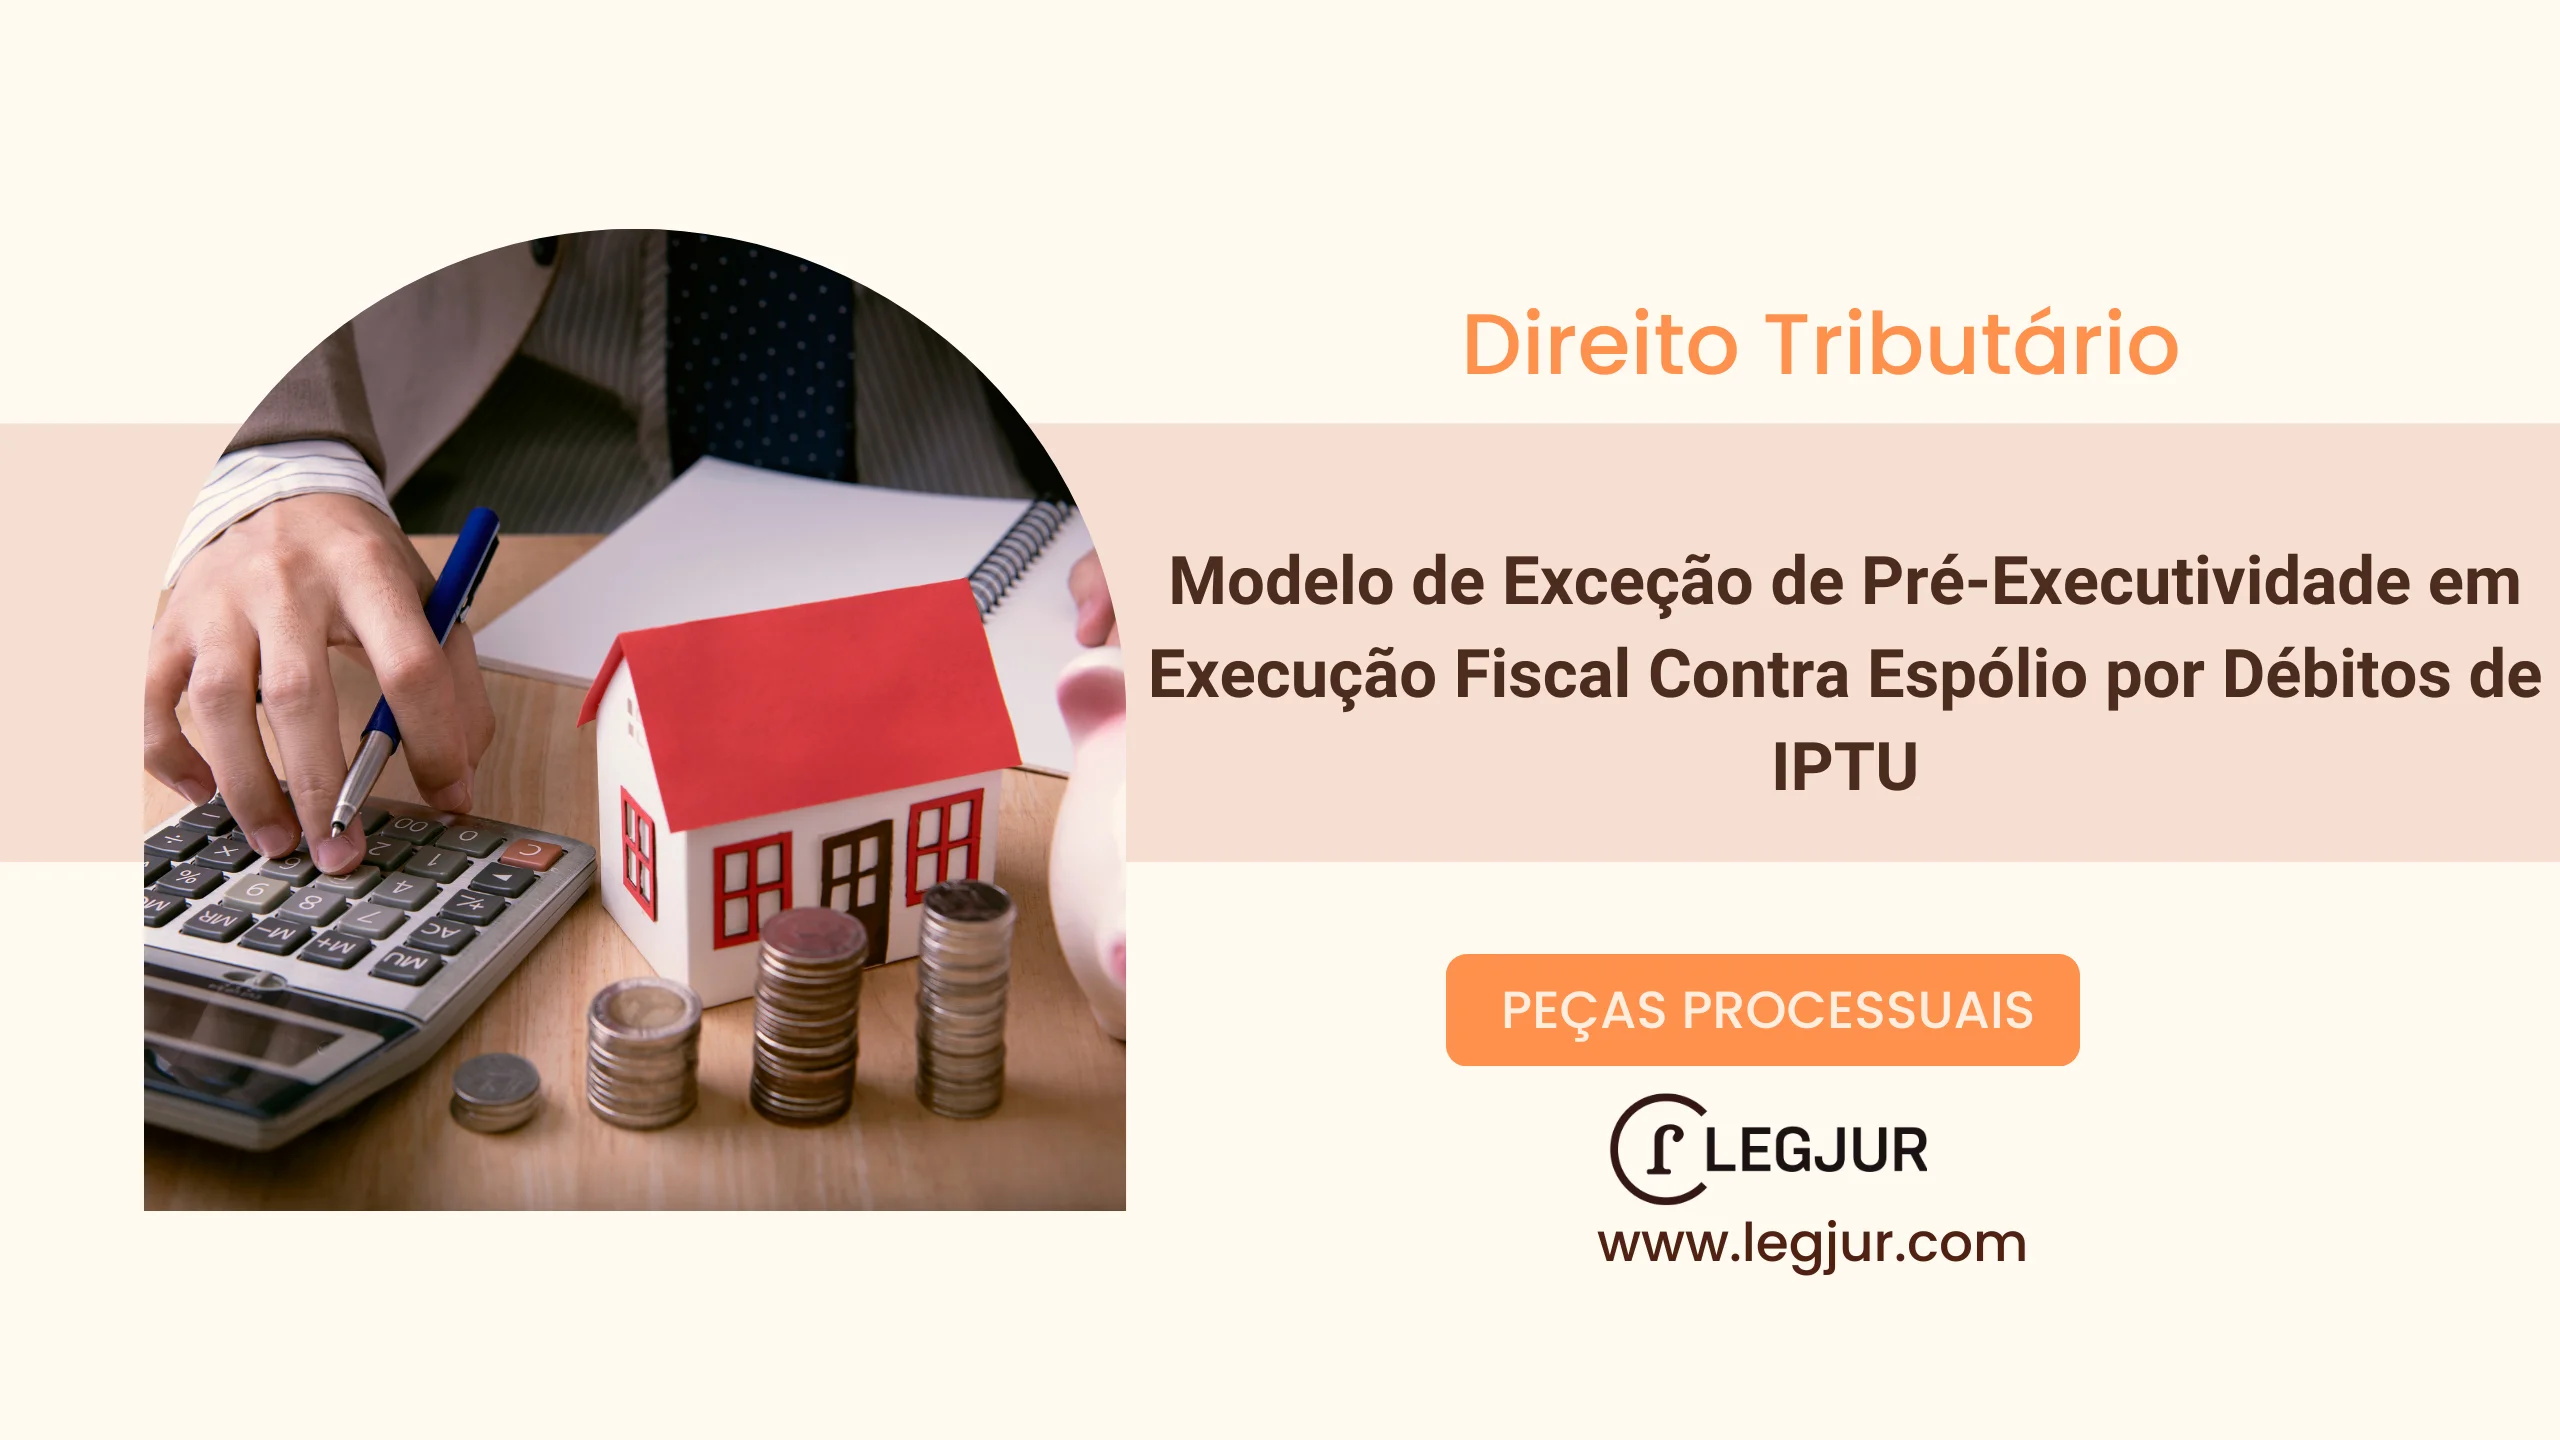 Modelo de Exceção de Pré-Executividade em Execução Fiscal Contra Espólio por Débitos de IPTU